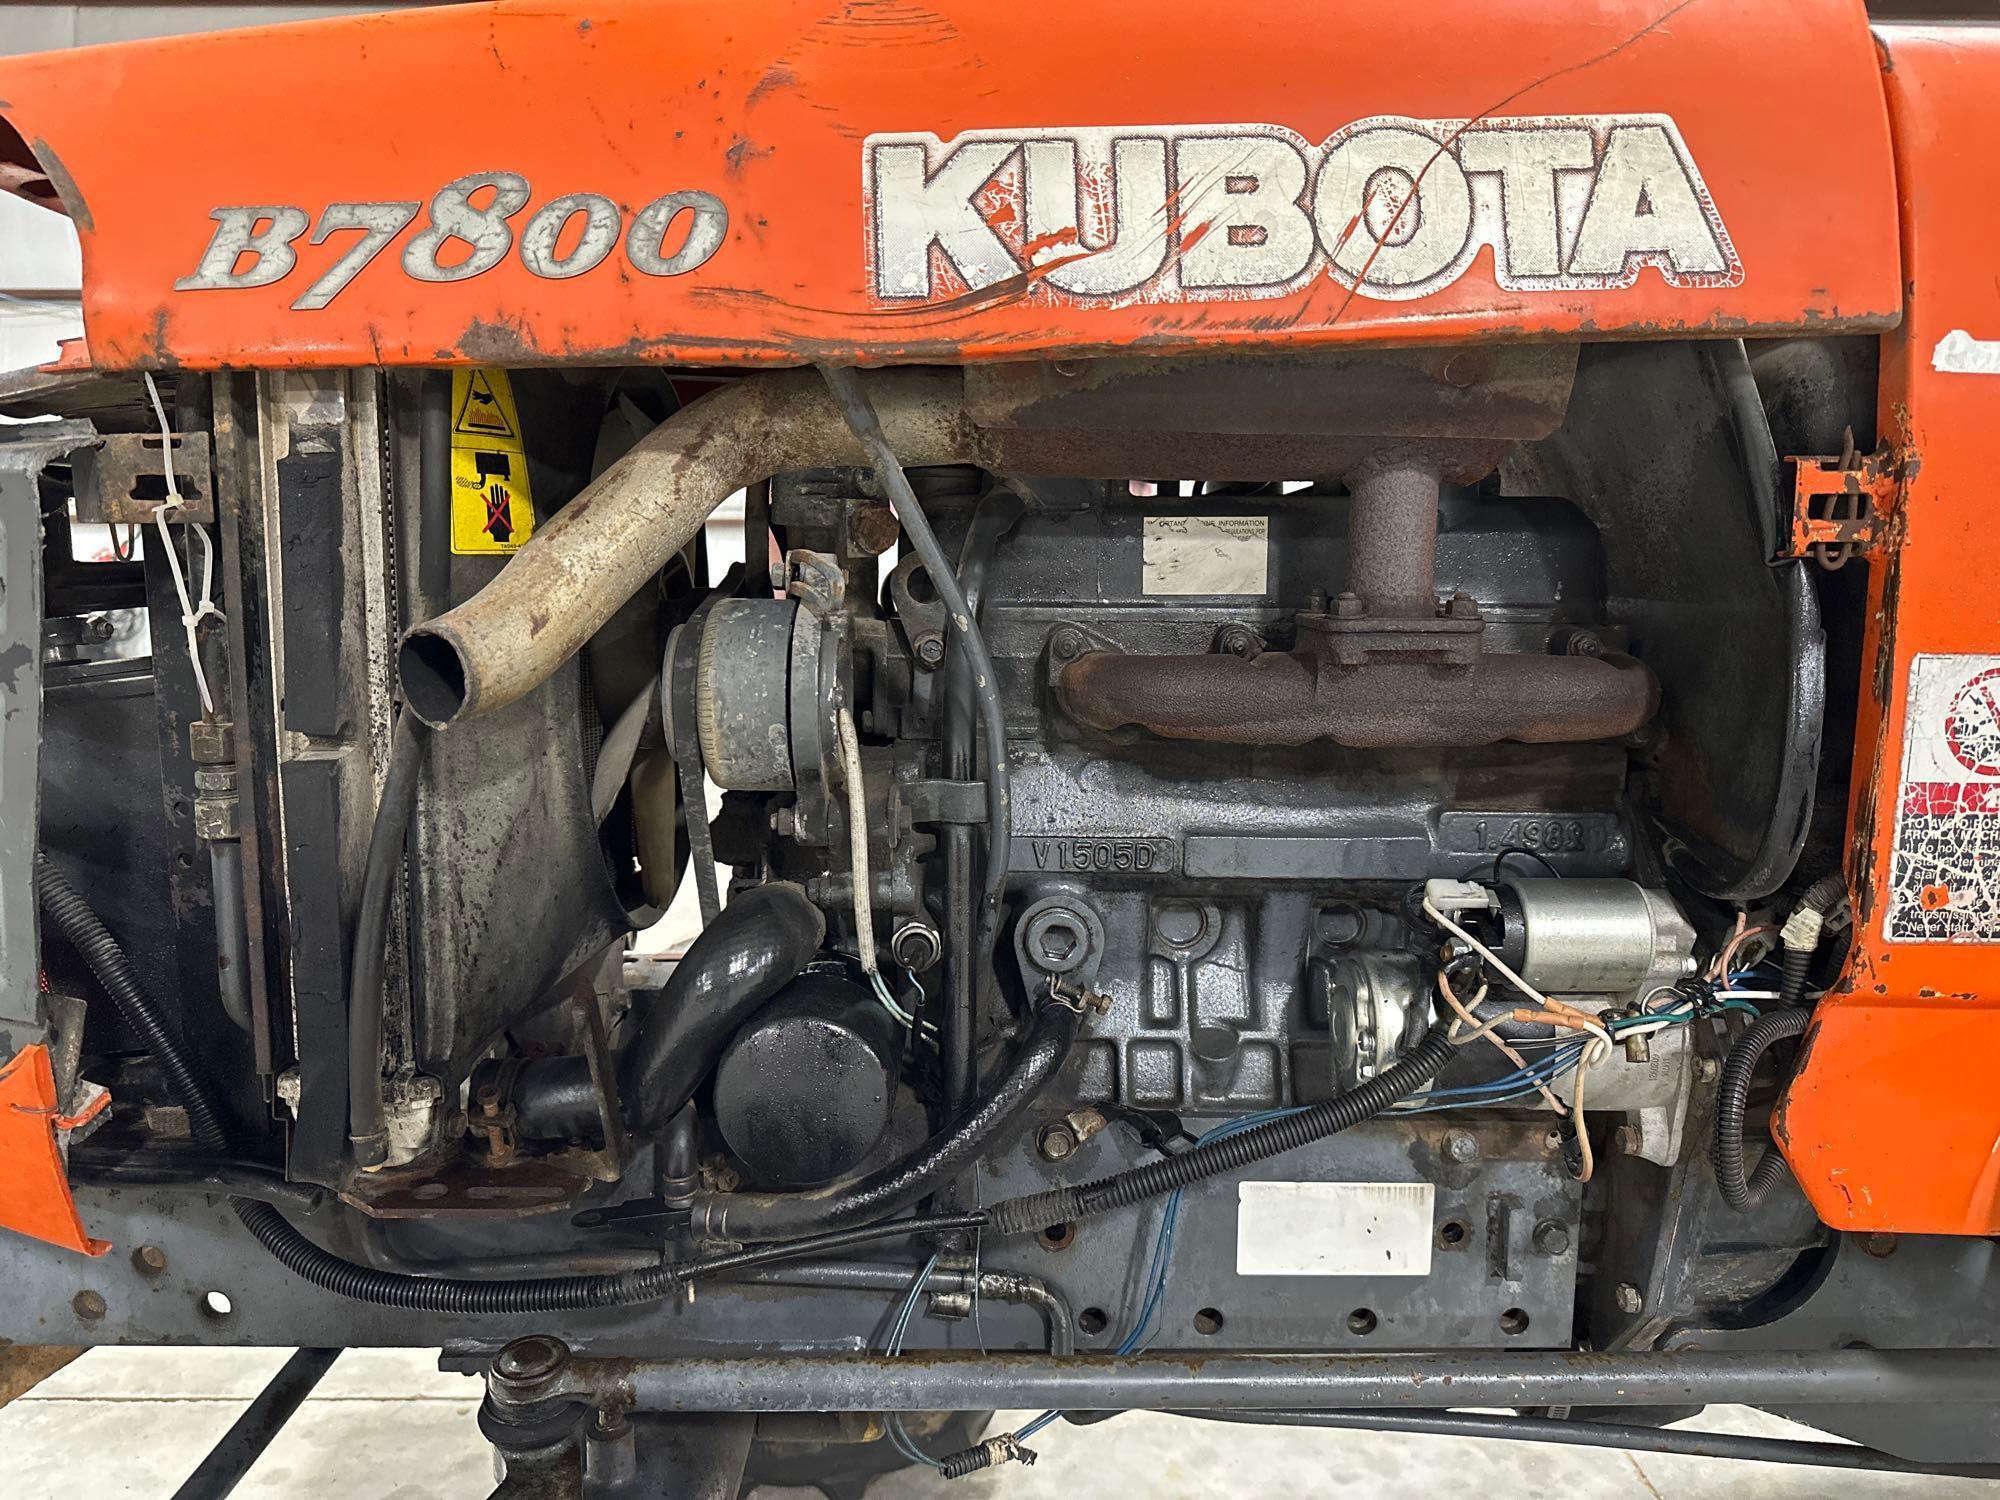 Kubota B7800 Compact Utility Tractor